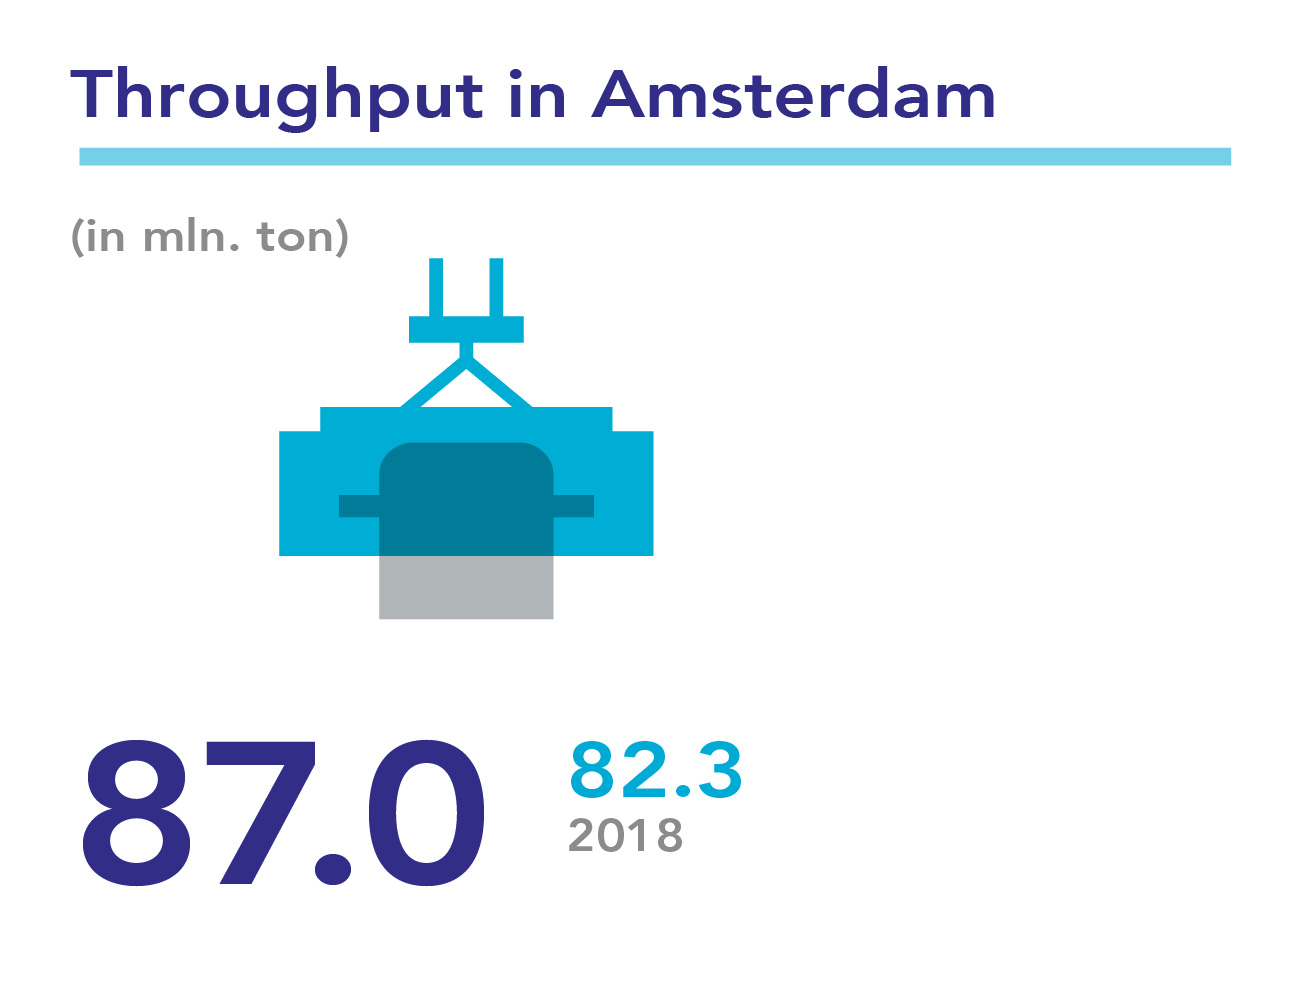 Throughput in Amsterdam in 2019: 87.0 million tonnes